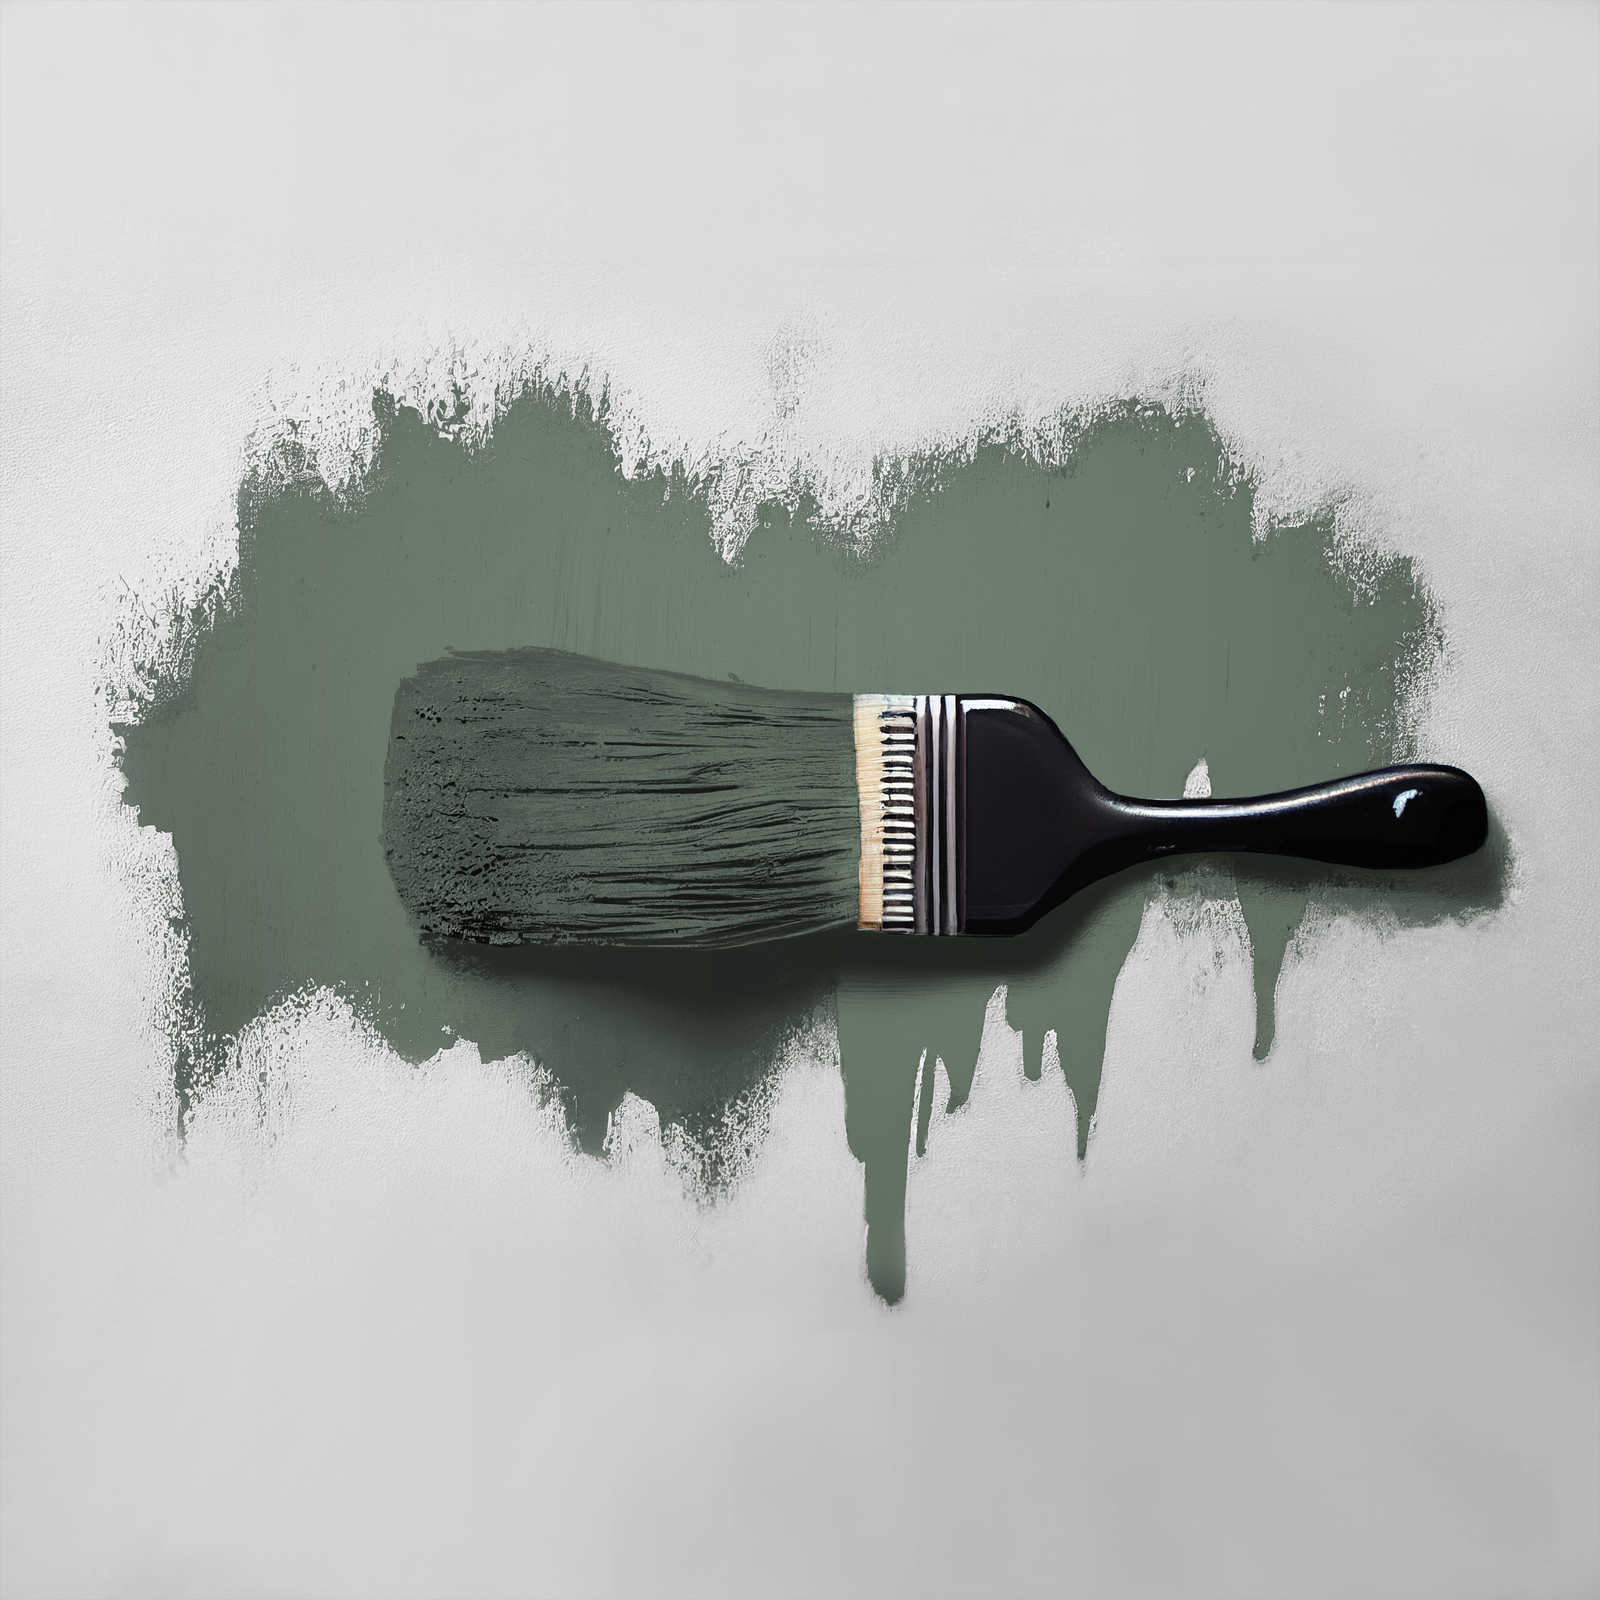             Peinture murale TCK4005 »Ritzy Rosemary« en vert confortable – 2,5 litres
        